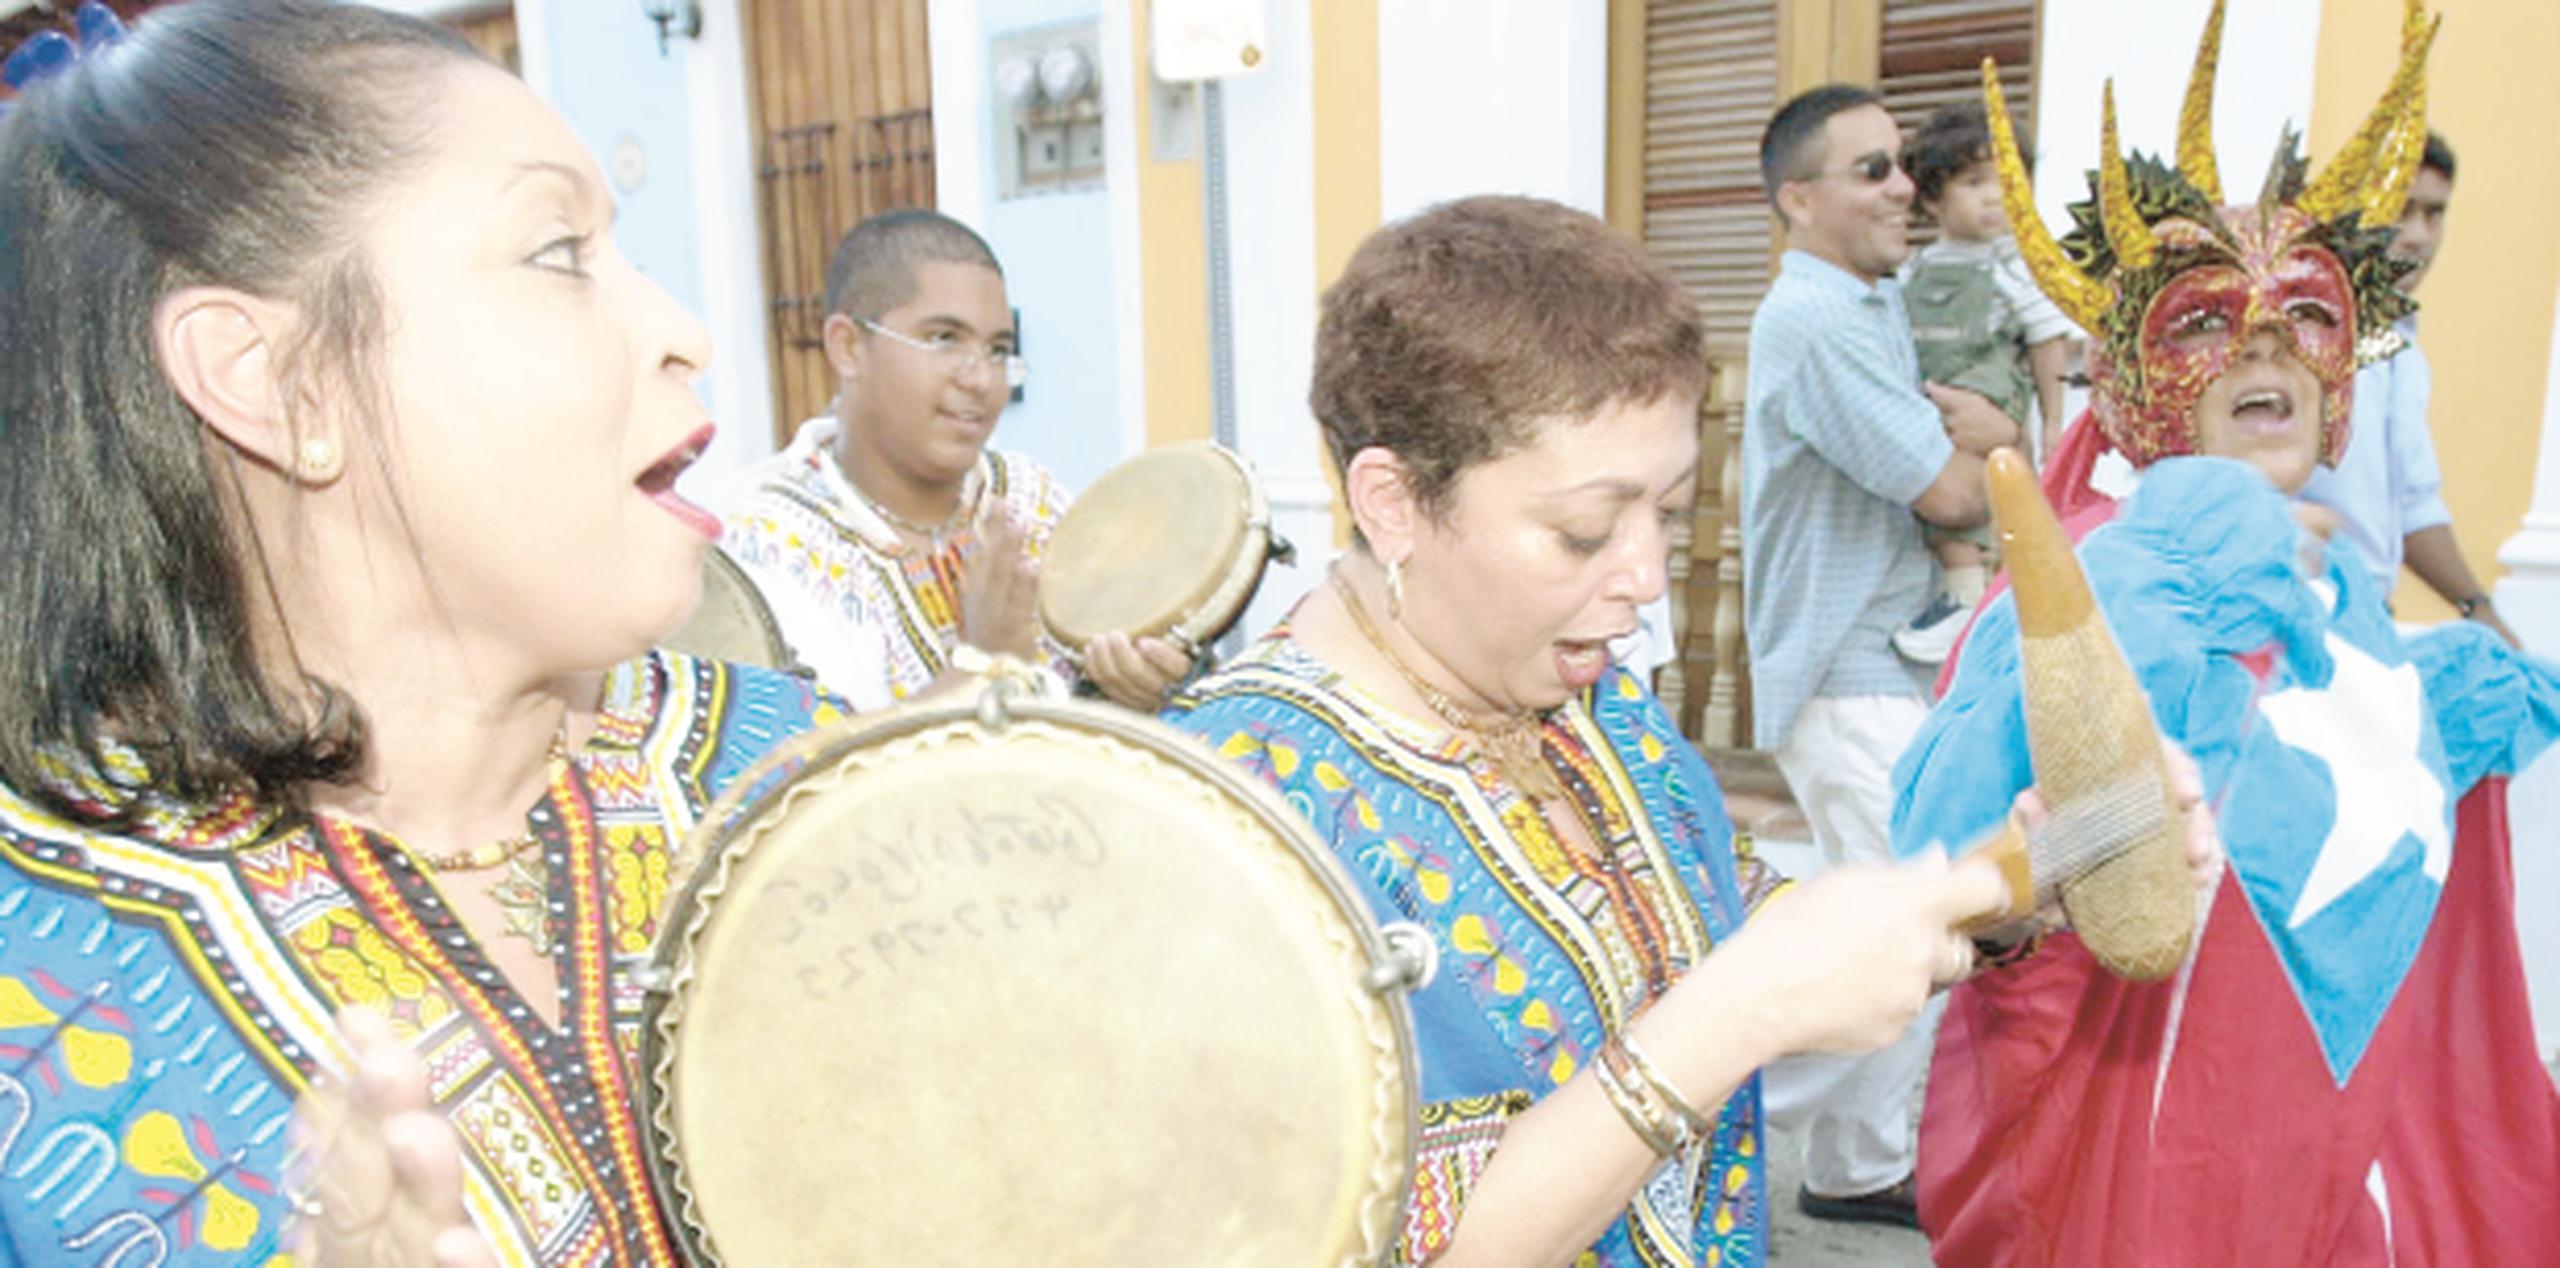 El grupo Plenibom junto a la folclorista Myrtha Salazar amenizarán el rosario. (ARCHIVO)
